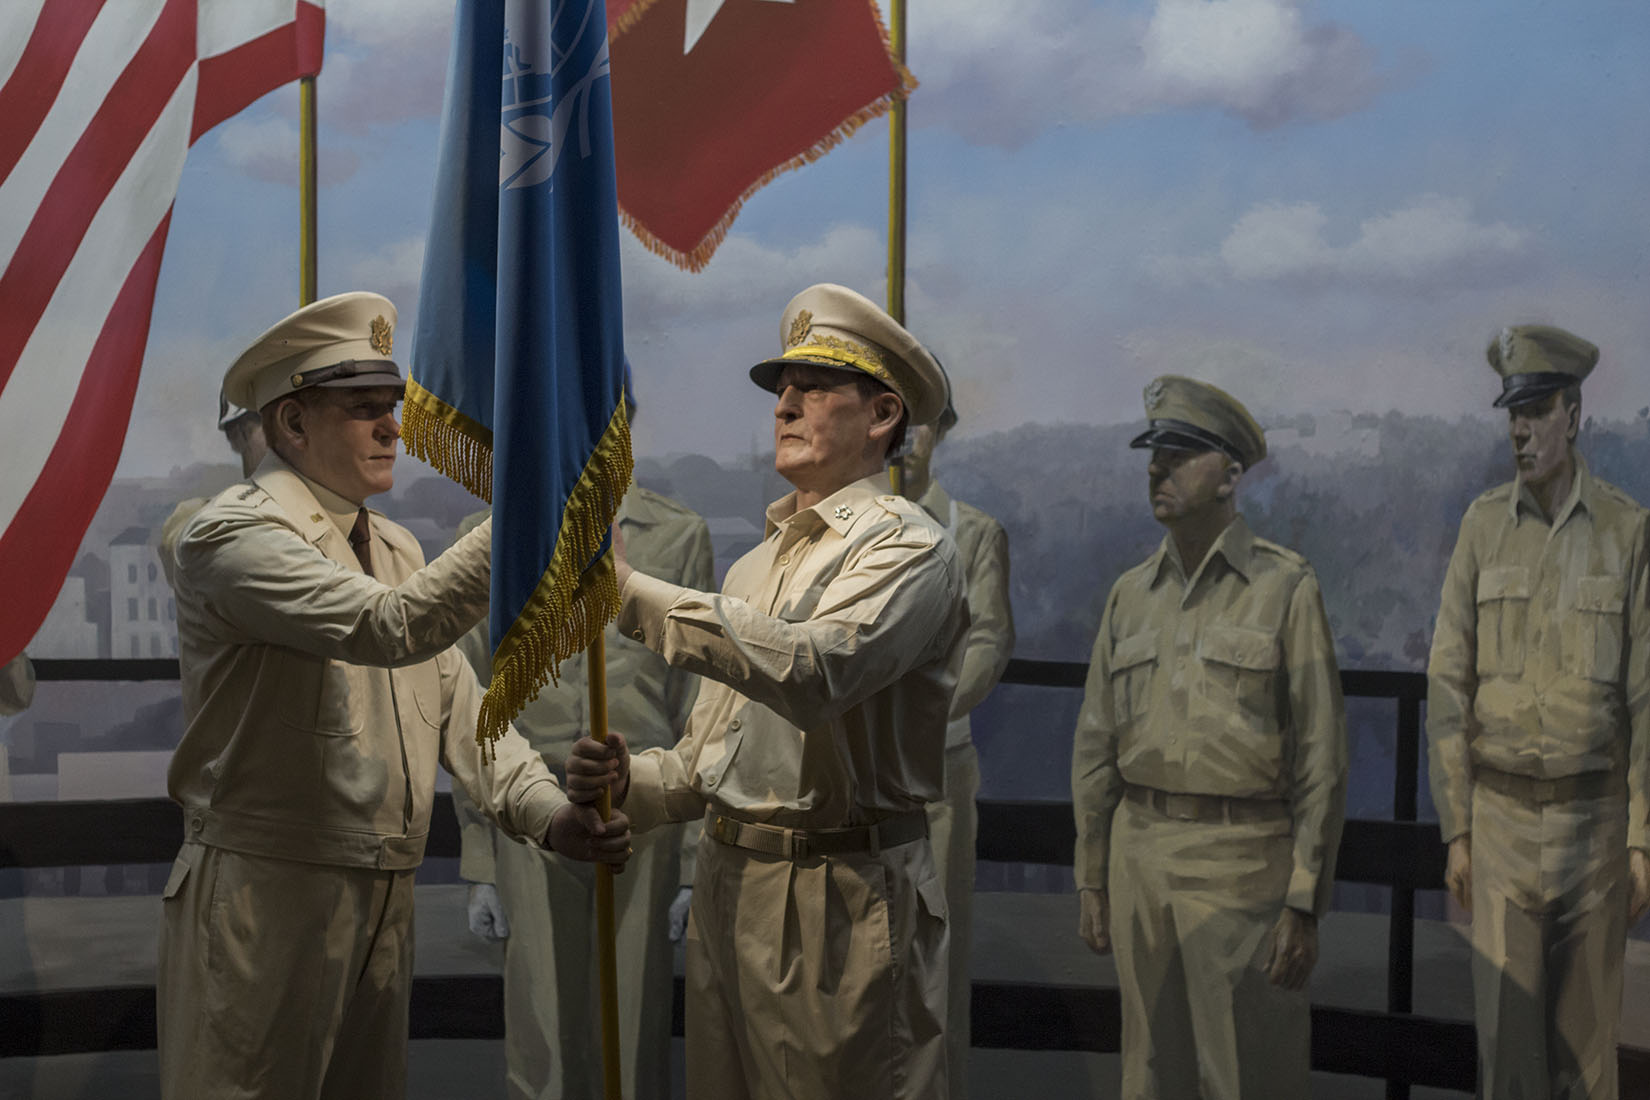 Officiers des nations unies, uniforme, drapeau, fin de la guerre de Corée, armistice, soldats